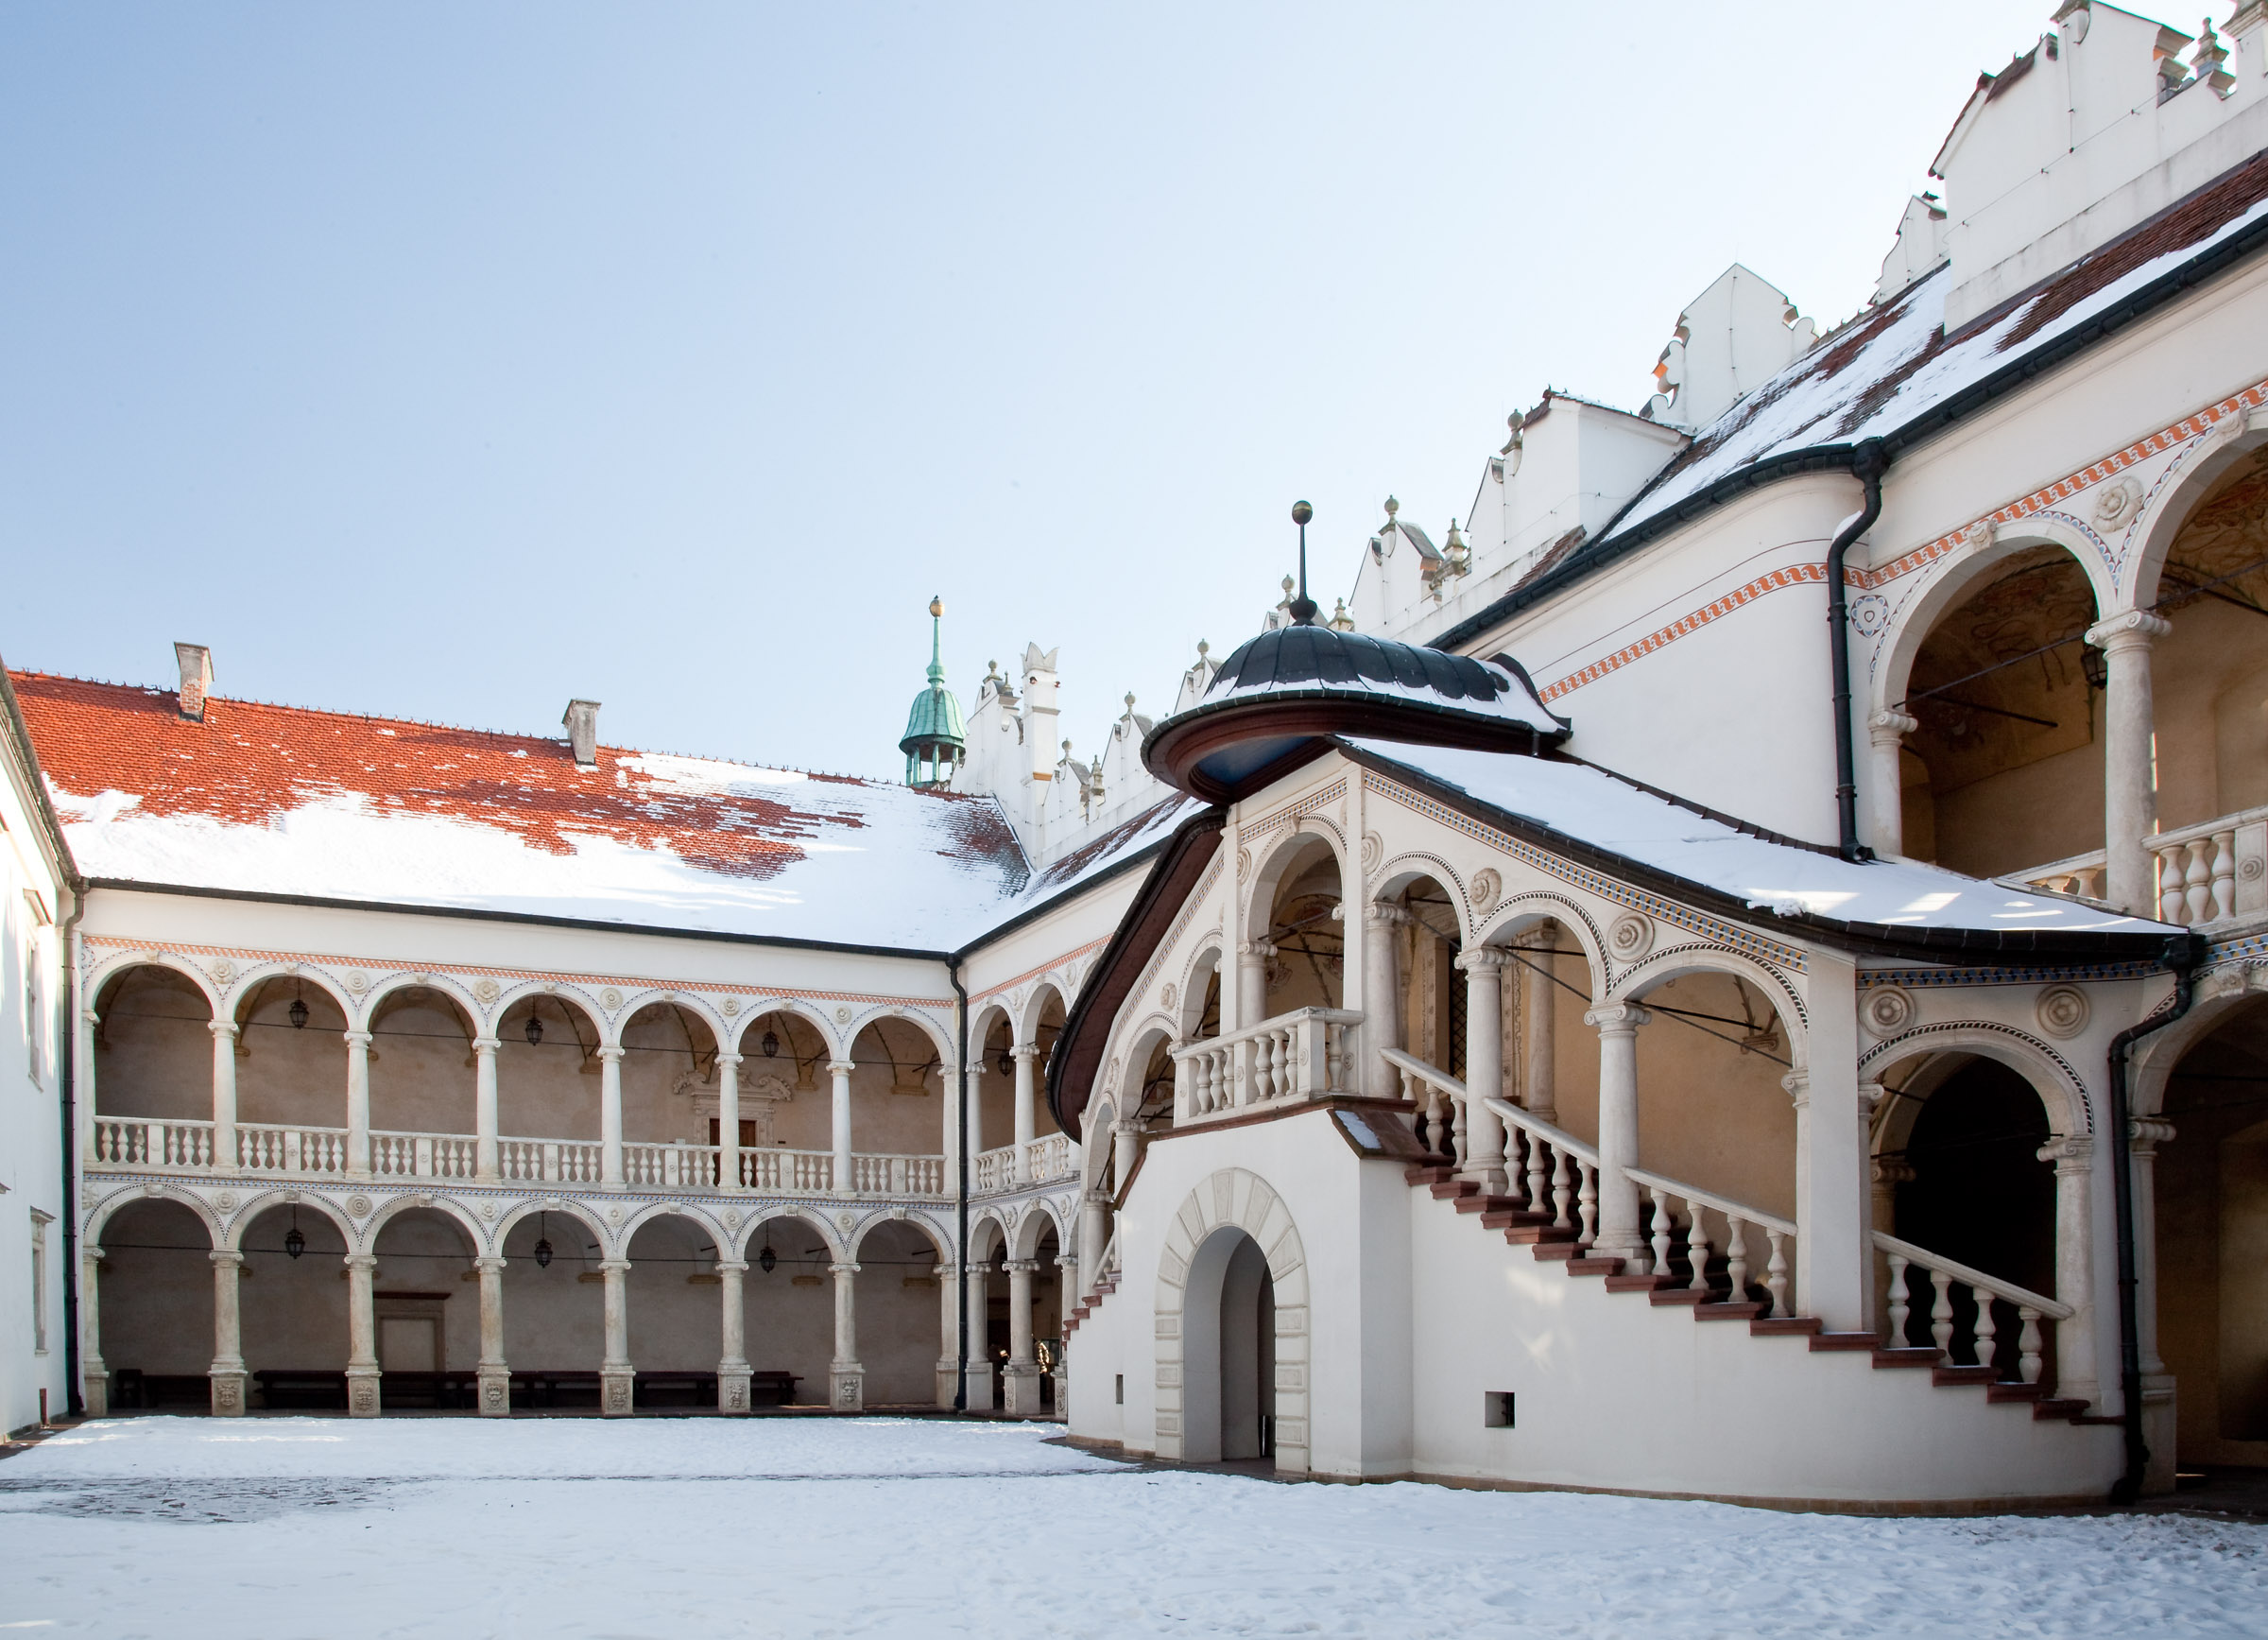 Dziedziniec zamku w Baranowie Sandomierskim. Architektura i krużganki przypominją zamek królewski na Wawelu.